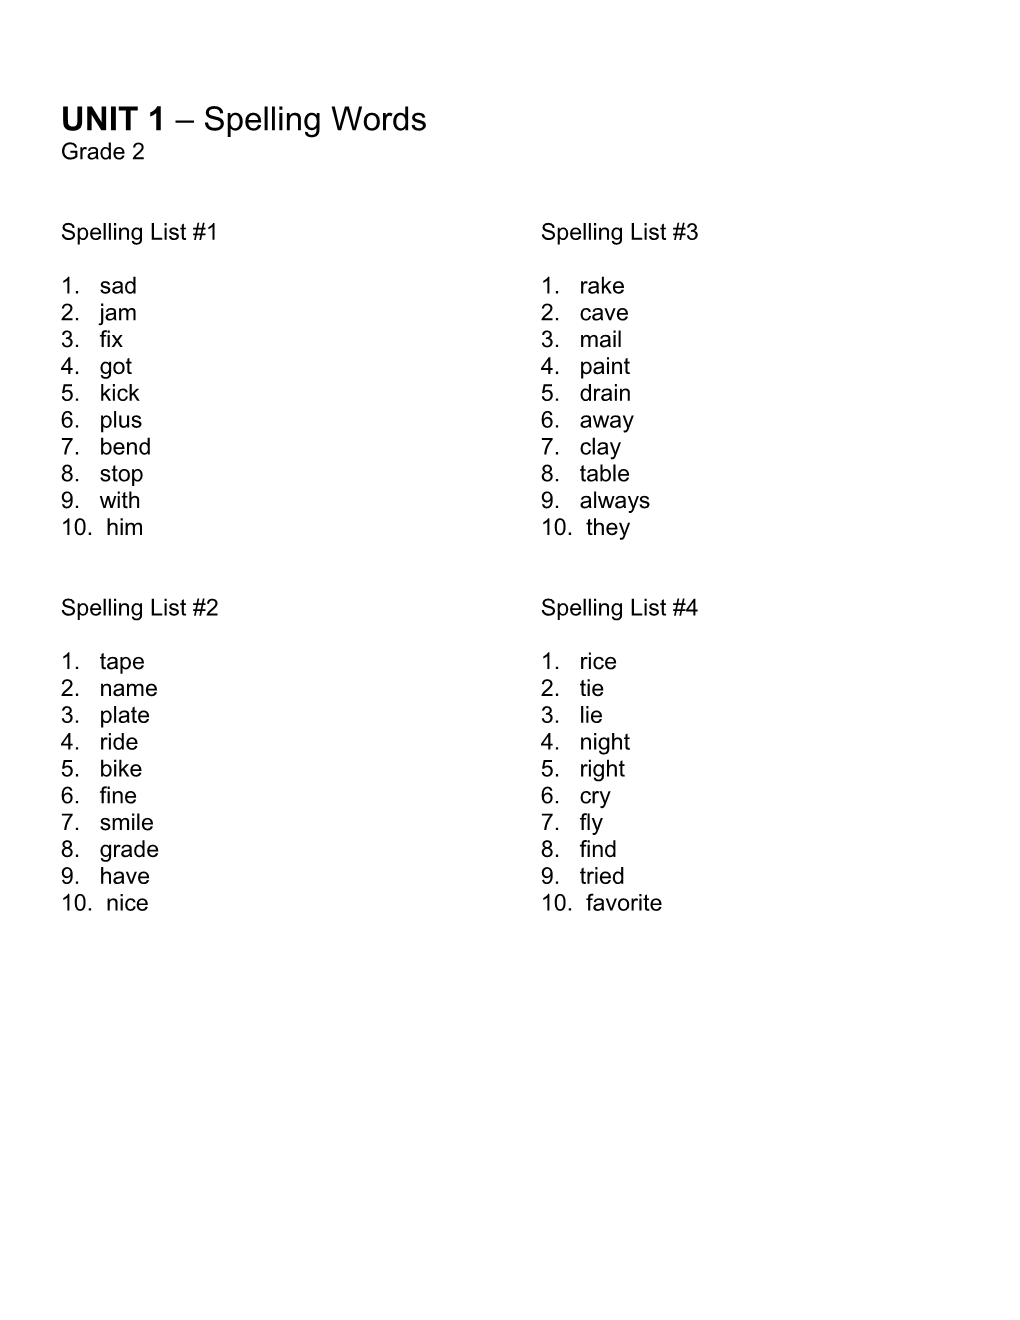 Week 1 Spelling List